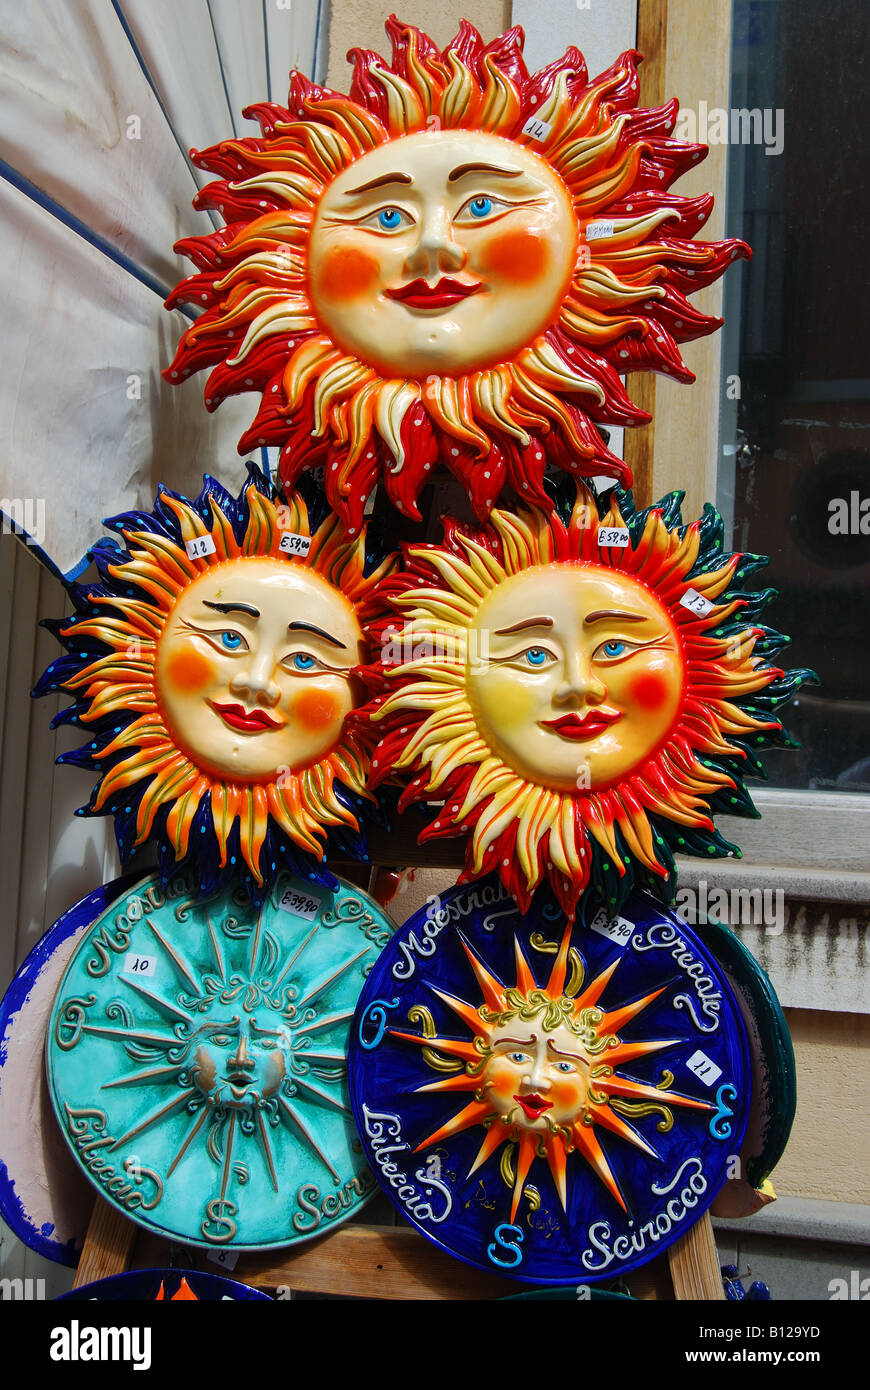 Sole in ceramica figure al di fuori del negozio di souvenir, Lipari, Isola di Lipari, Provincia di Messina, Sicilia, Italia Foto Stock